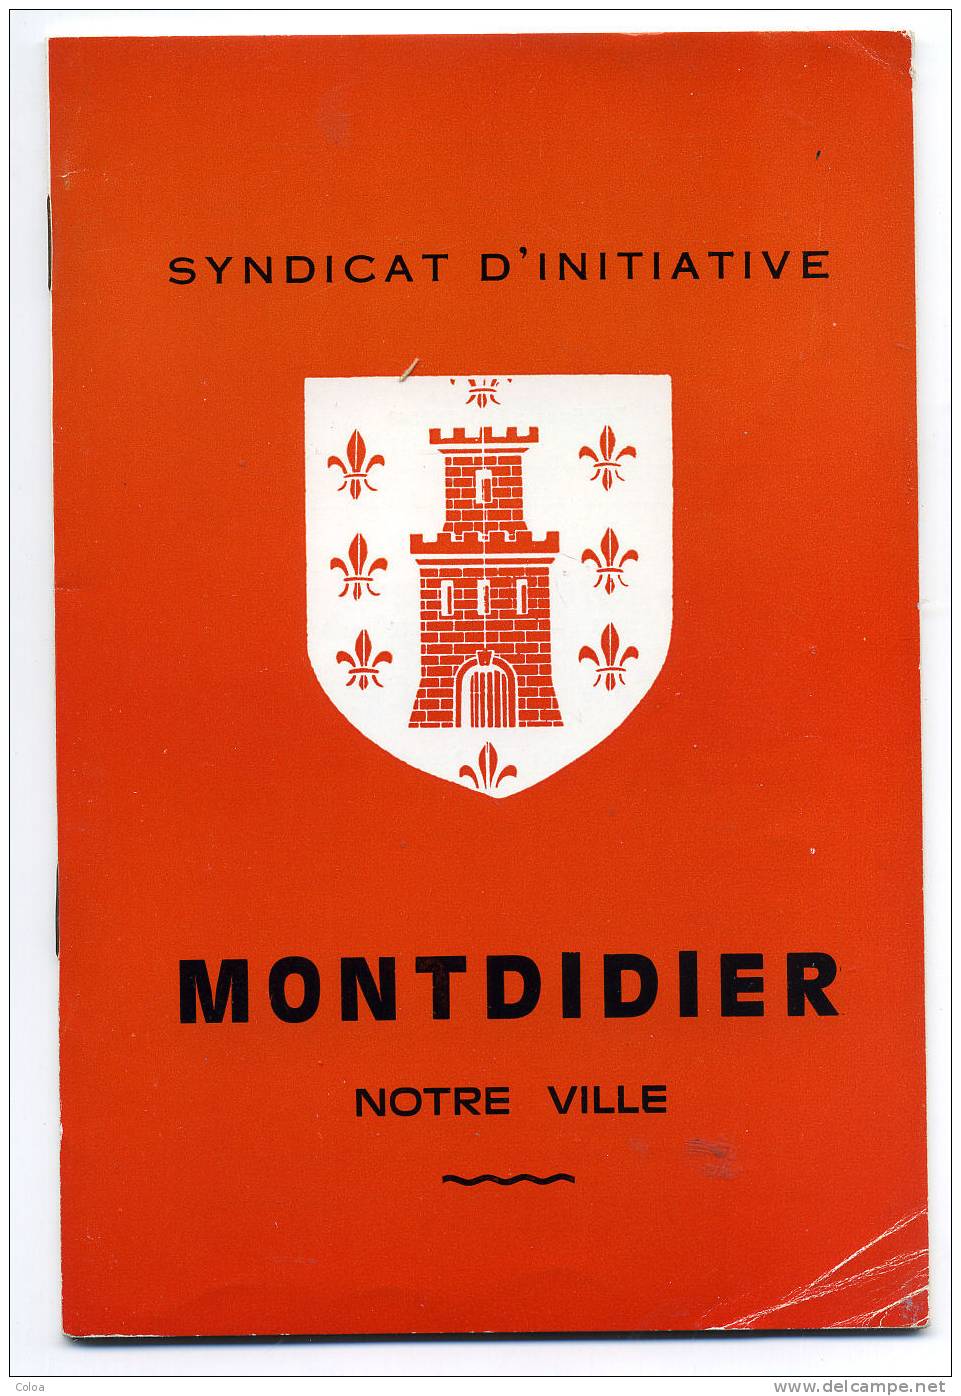 Montdidier Notre Ville 1975 - Picardie - Nord-Pas-de-Calais